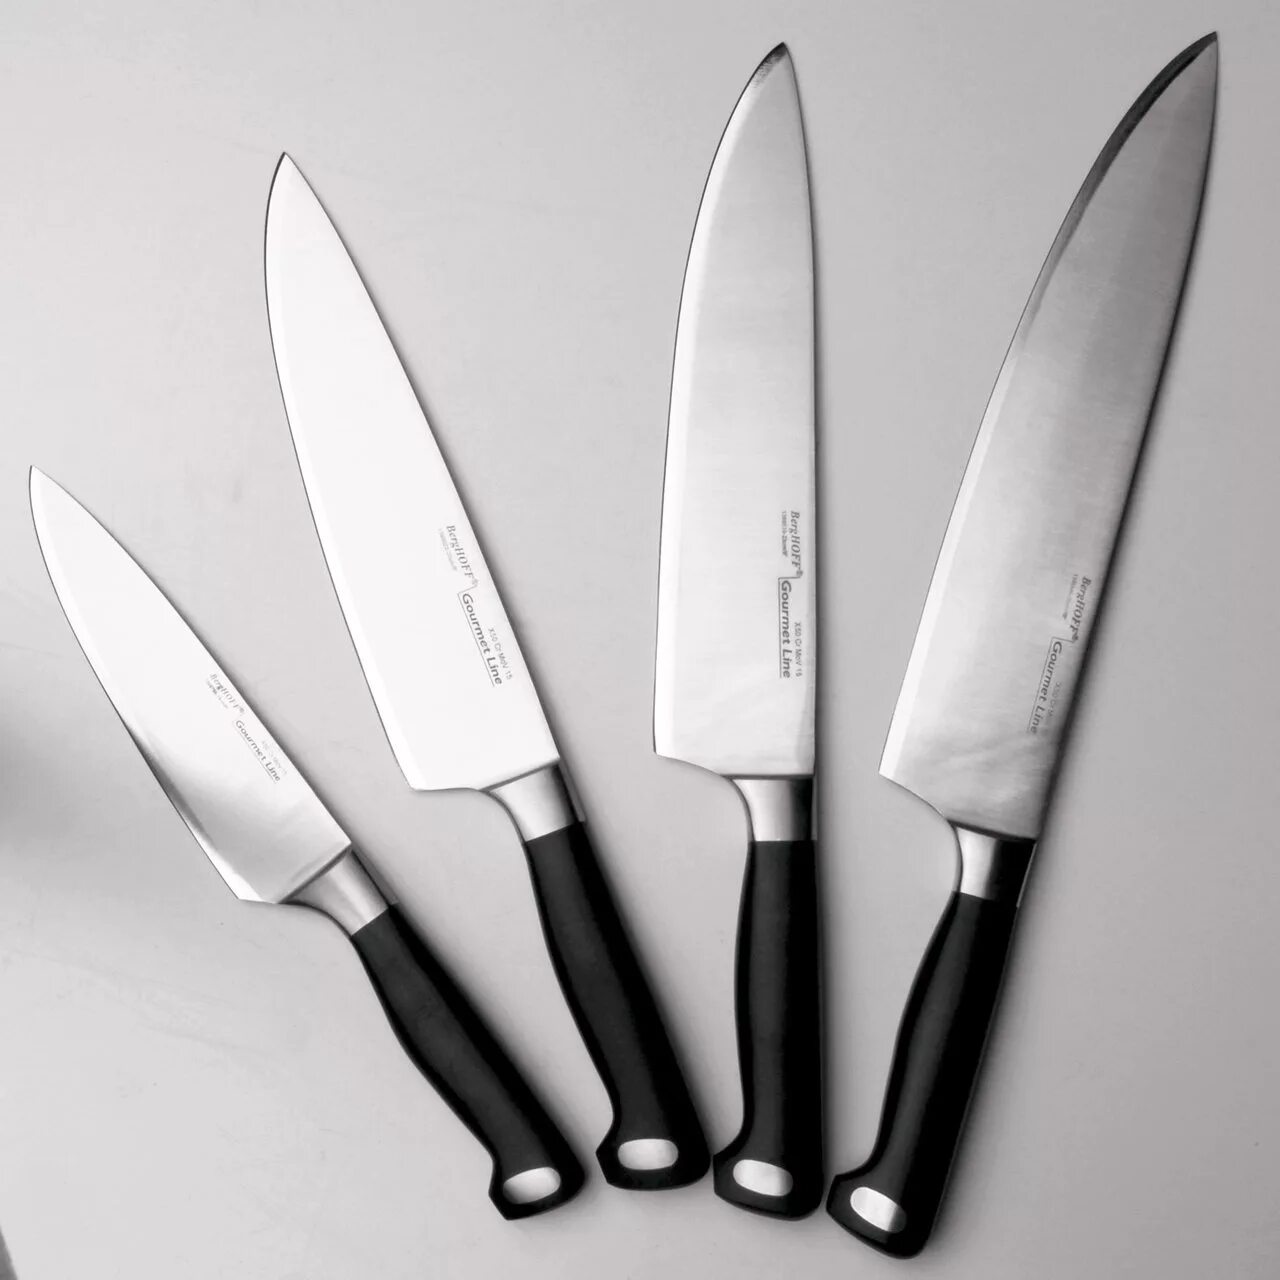 Нож поварской BERGHOFF Gourmet. Tojiro Julia Vysotskaya professional Pro Дамаск. Нож поварской "Gourmet", 20 см. BERGHOFF нож разделочный Gourmet 20 см. Какой кухонный нож купить